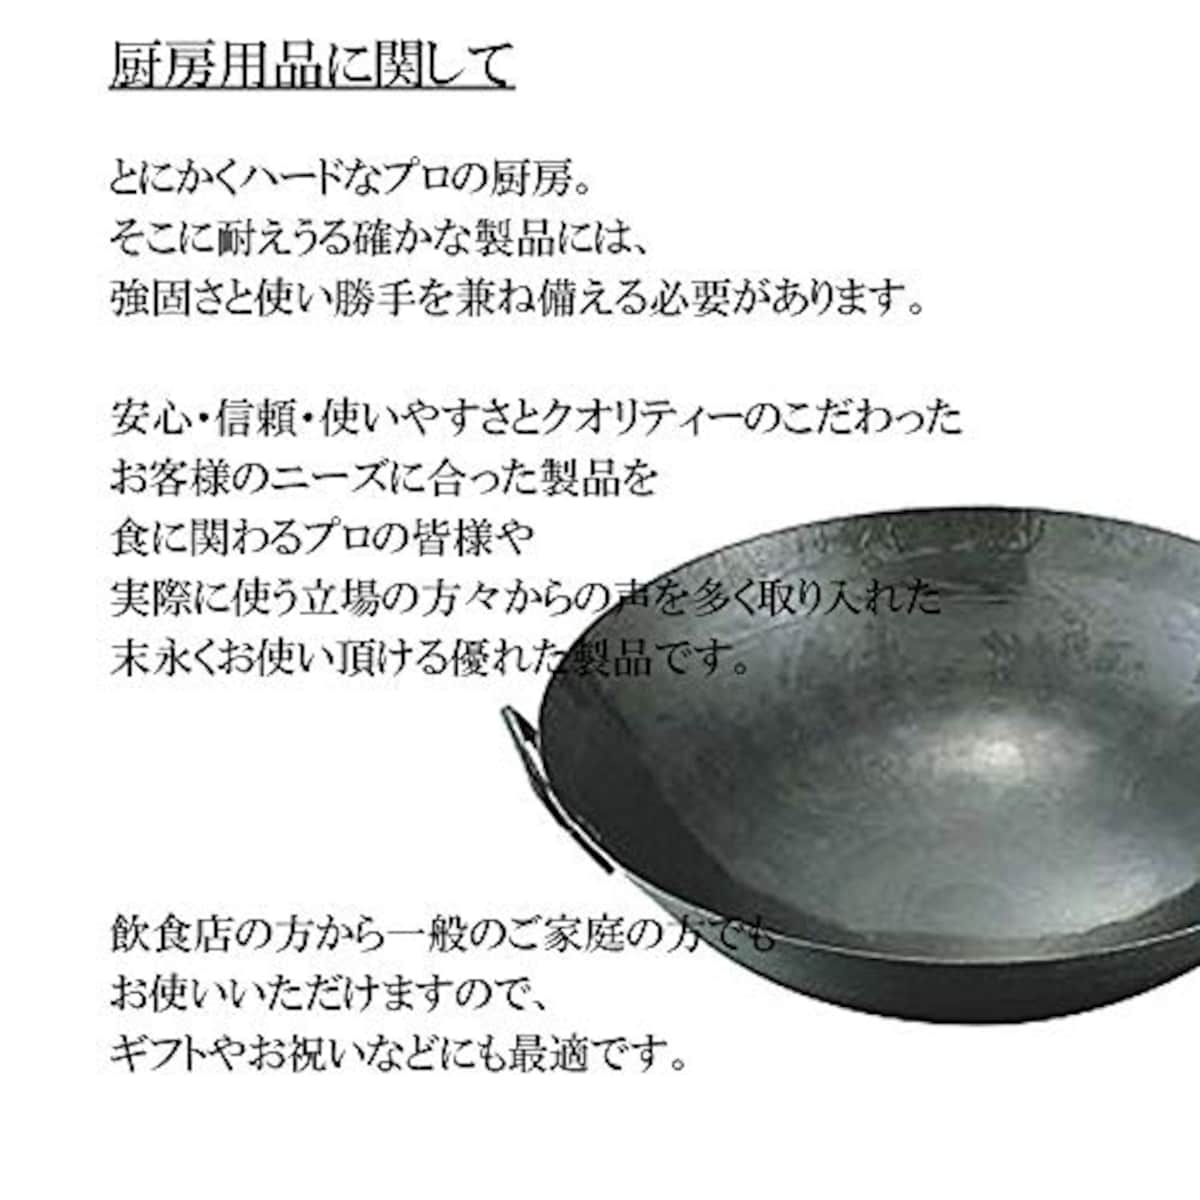  マイスタープレミアムフライパン 24cm [ 24cm 590g ] [ フライパン ] | 厨房 キッチン 台所 調理 業務用画像2 